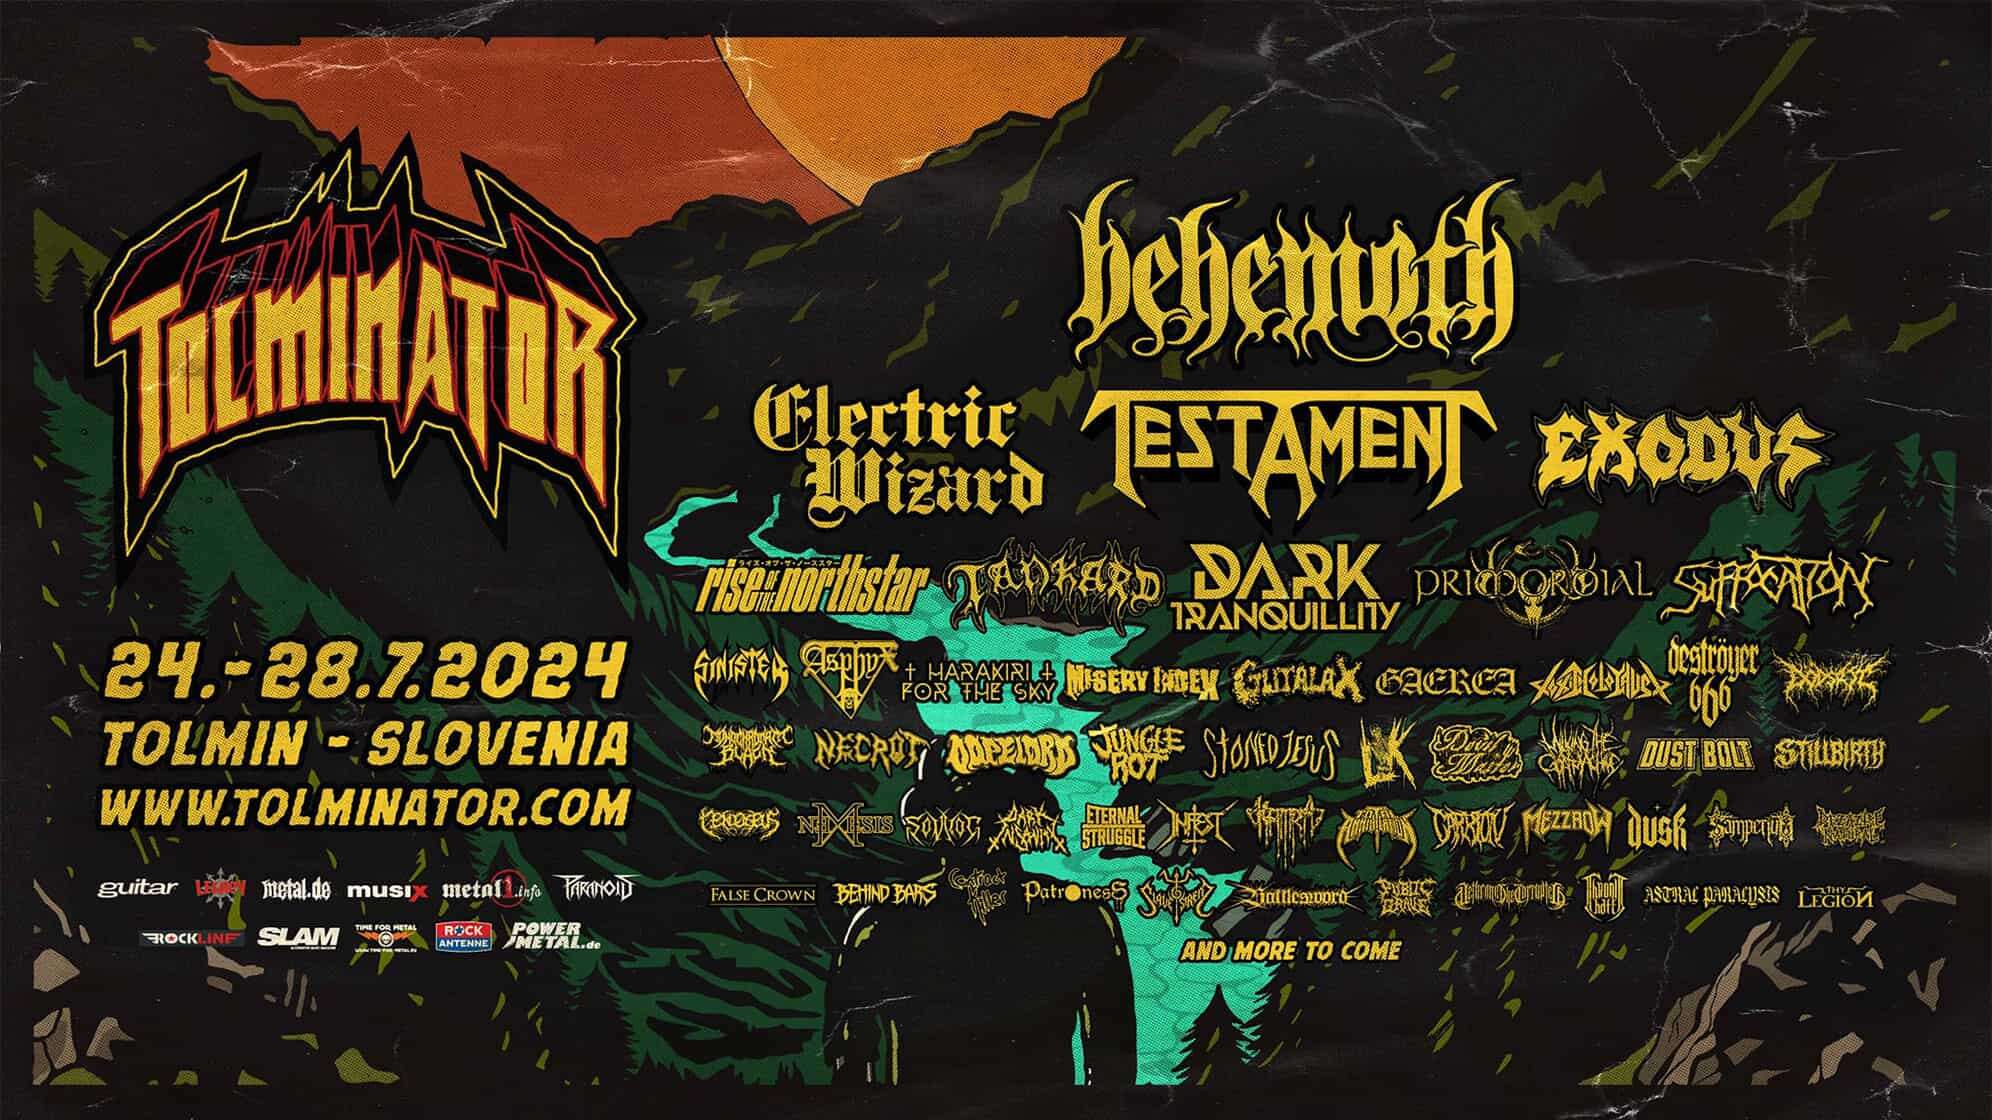 Festival Plakat des TOLMINATOR Festivals 2024 in Tolmin, Slowenien, mit Bands wie Behemoth, Testament, Electric Wizard, Exodus und vielen mehr